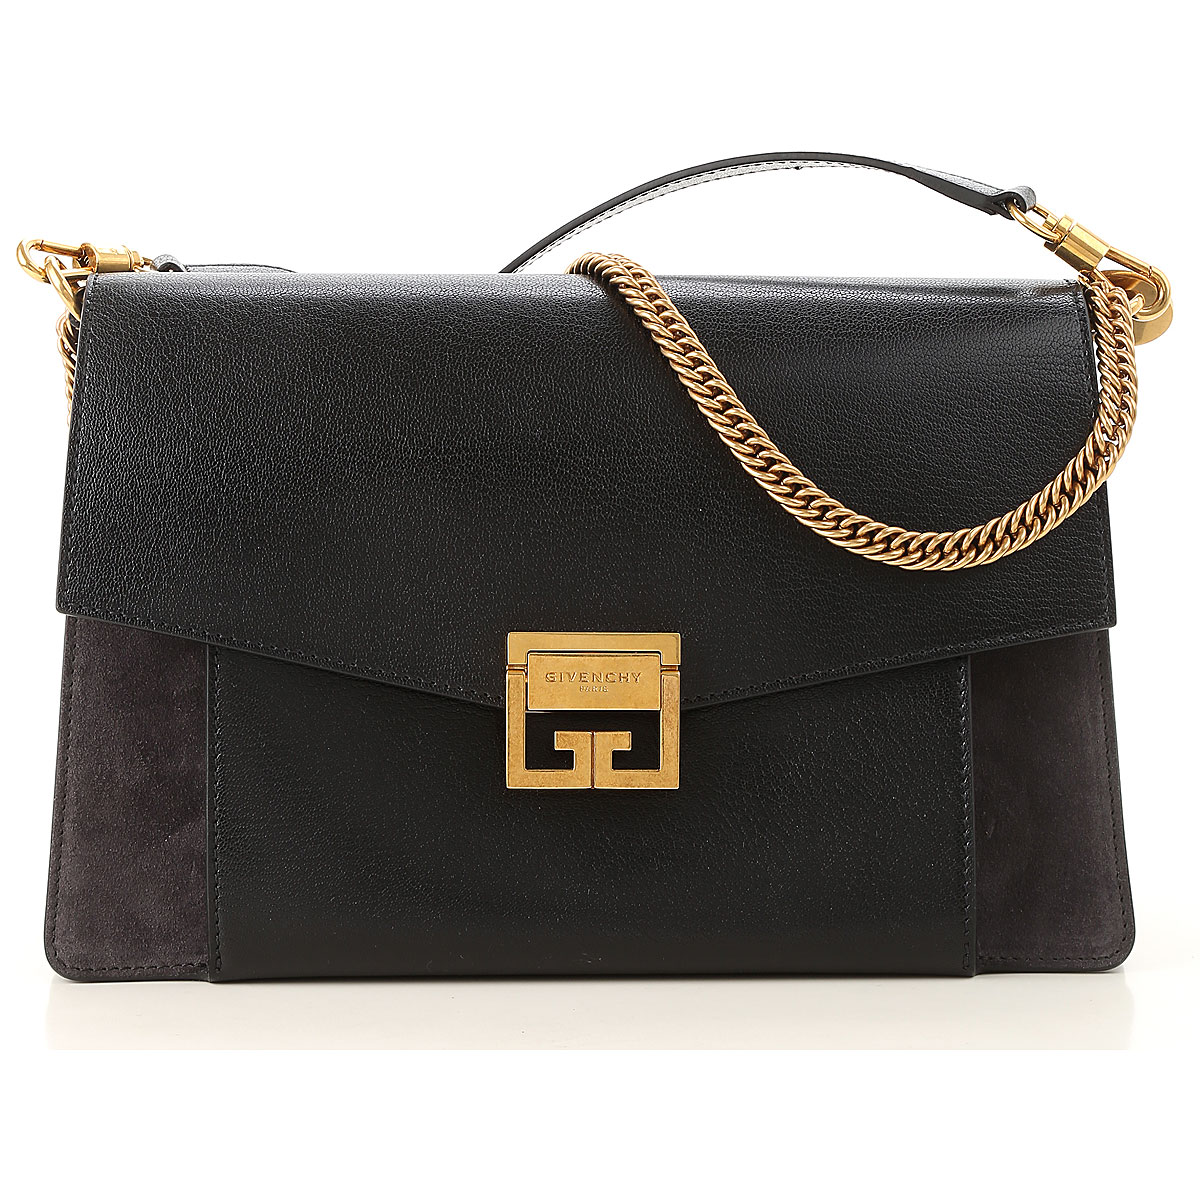 Handbags Givenchy, Style code: bb501db033-002-